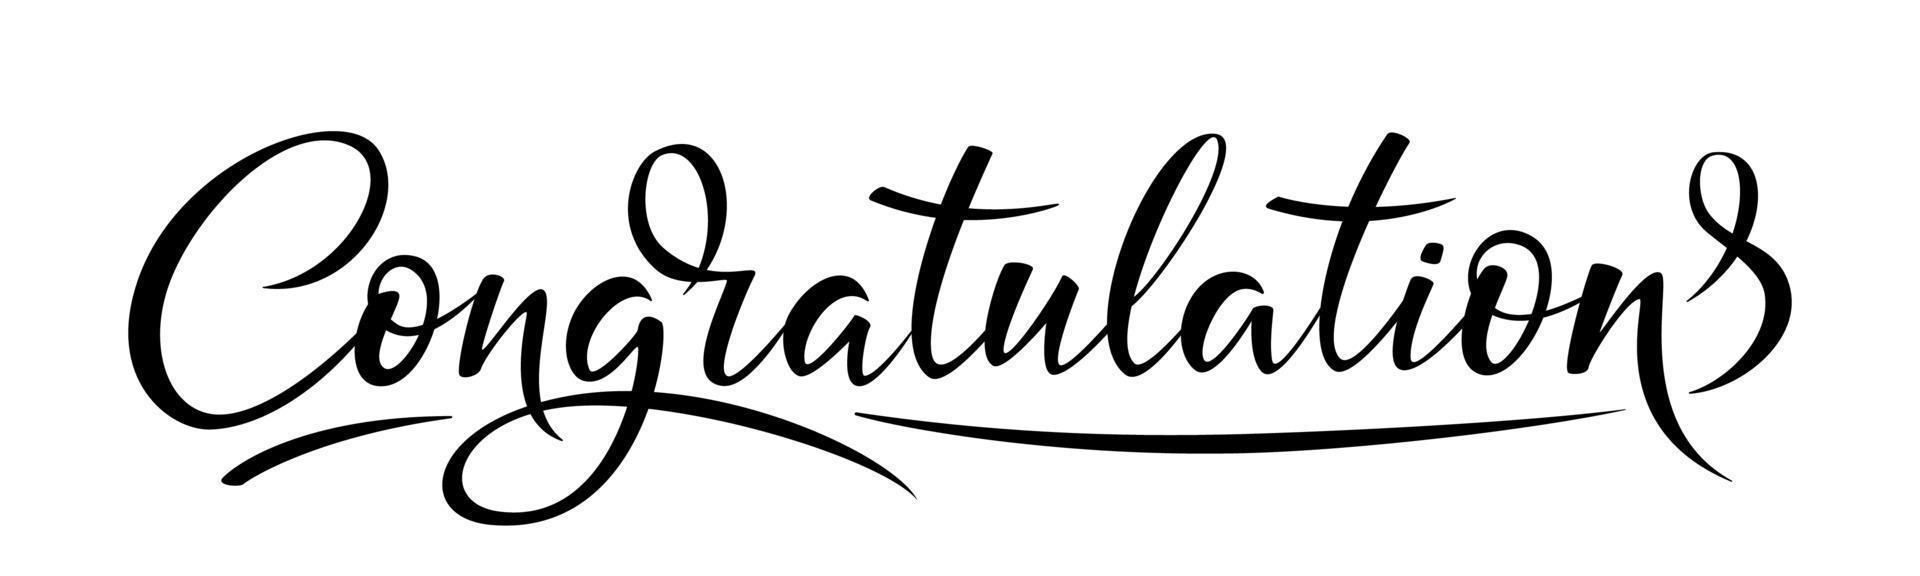 congratulazioni lettering segno di saluto, lettering moderno pennello scritto a mano isolato su bianco vettore